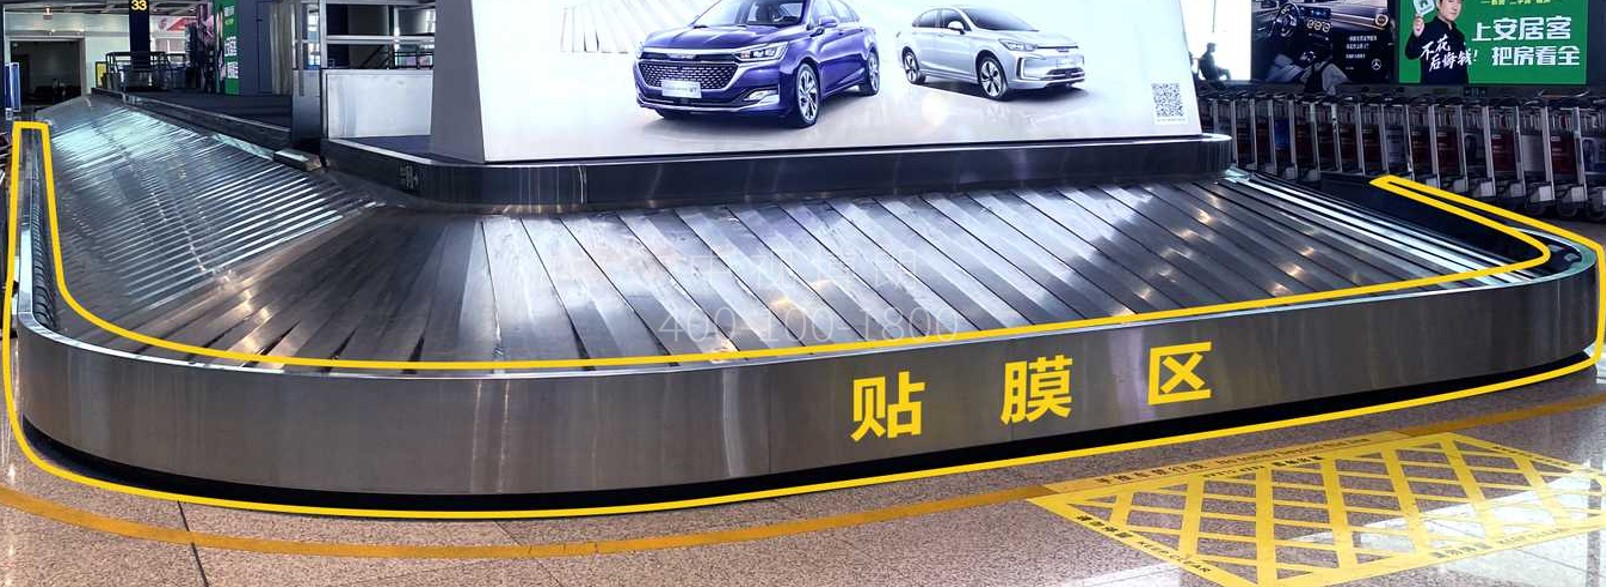 北京首都机场广告-T3国际行李厅8组联排贴膜